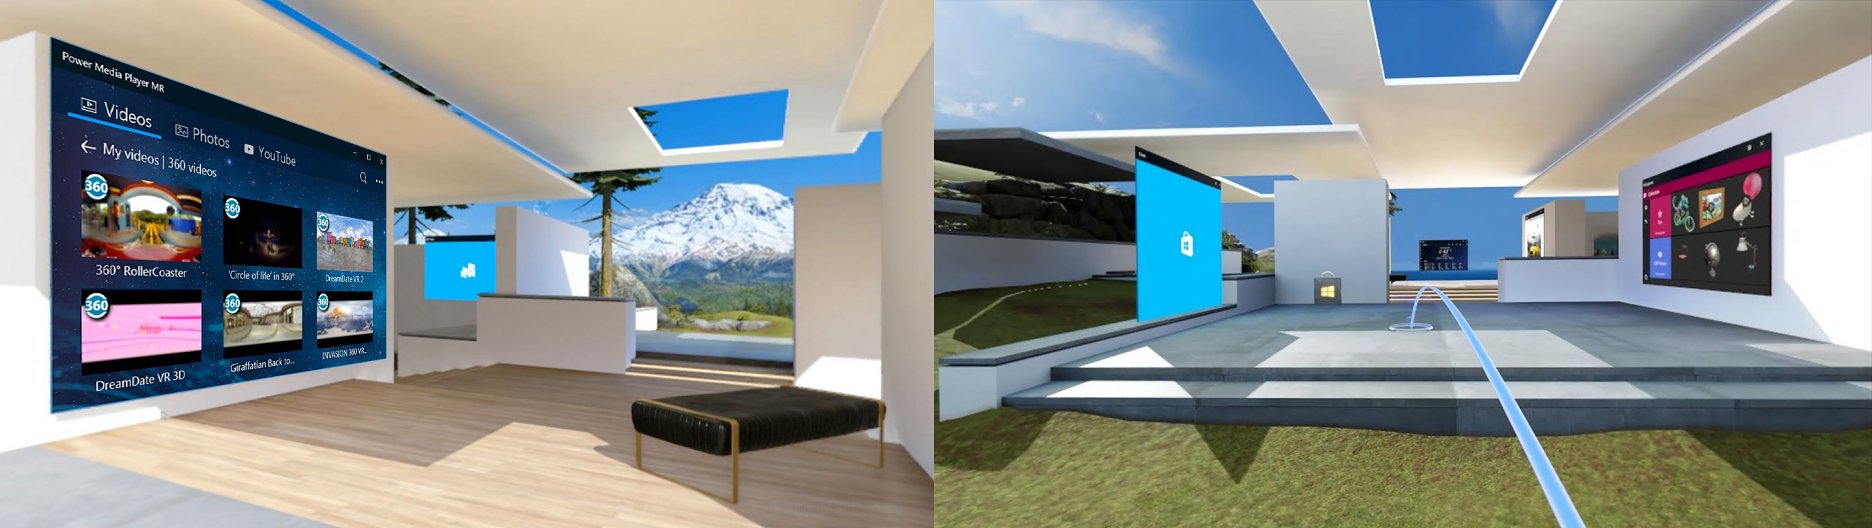 "Cliff house" - užívateľské rozhranie pre Windows Mixed Reality